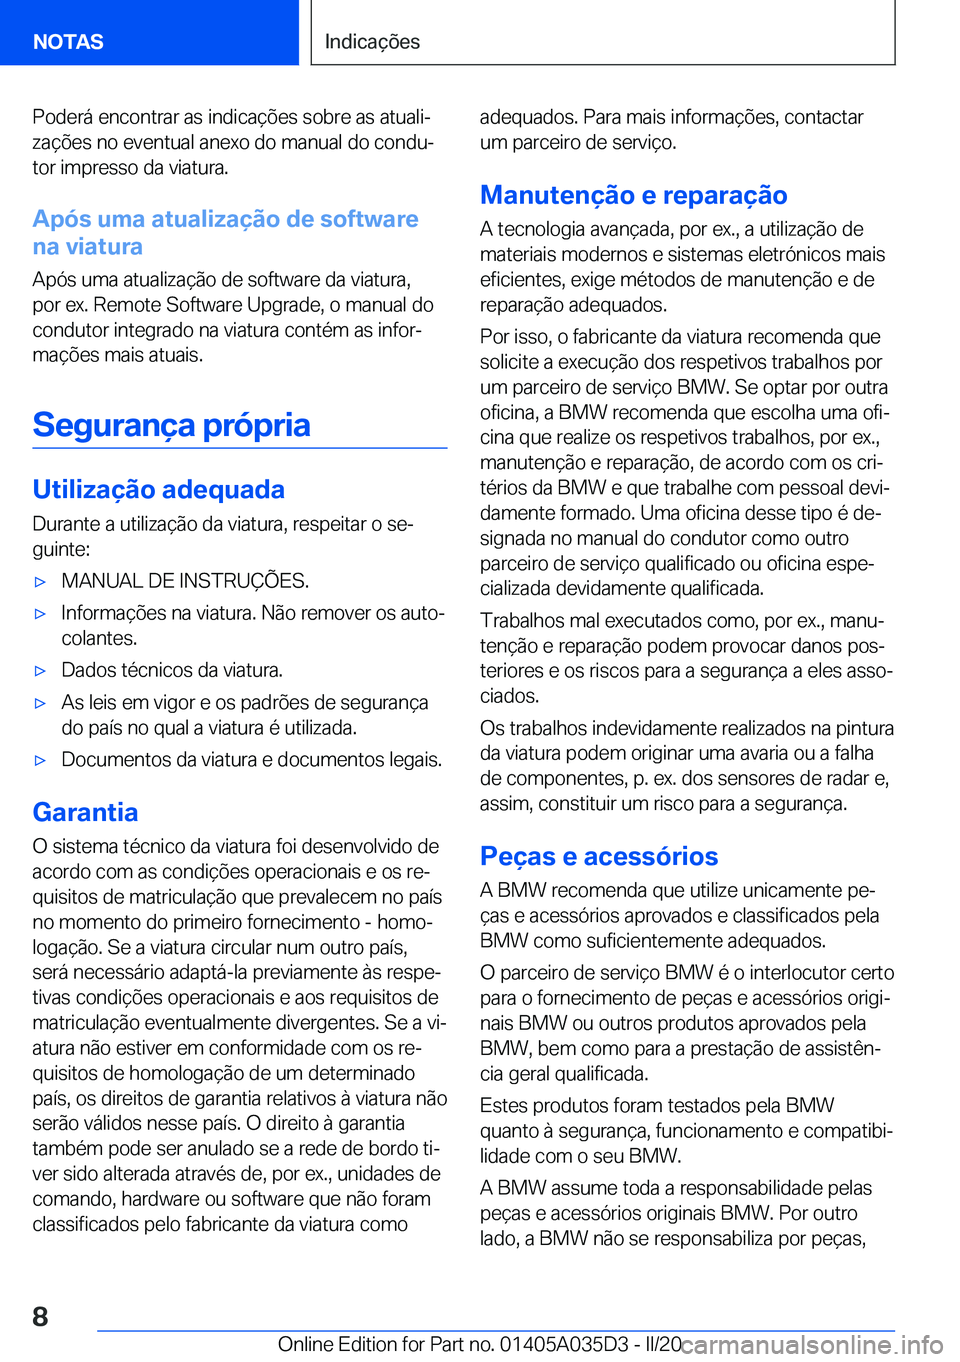 BMW X4 2020  Manual do condutor (in Portuguese) �P�o�d�e�r�á��e�n�c�o�n�t�r�a�r��a�s��i�n�d�i�c�a�